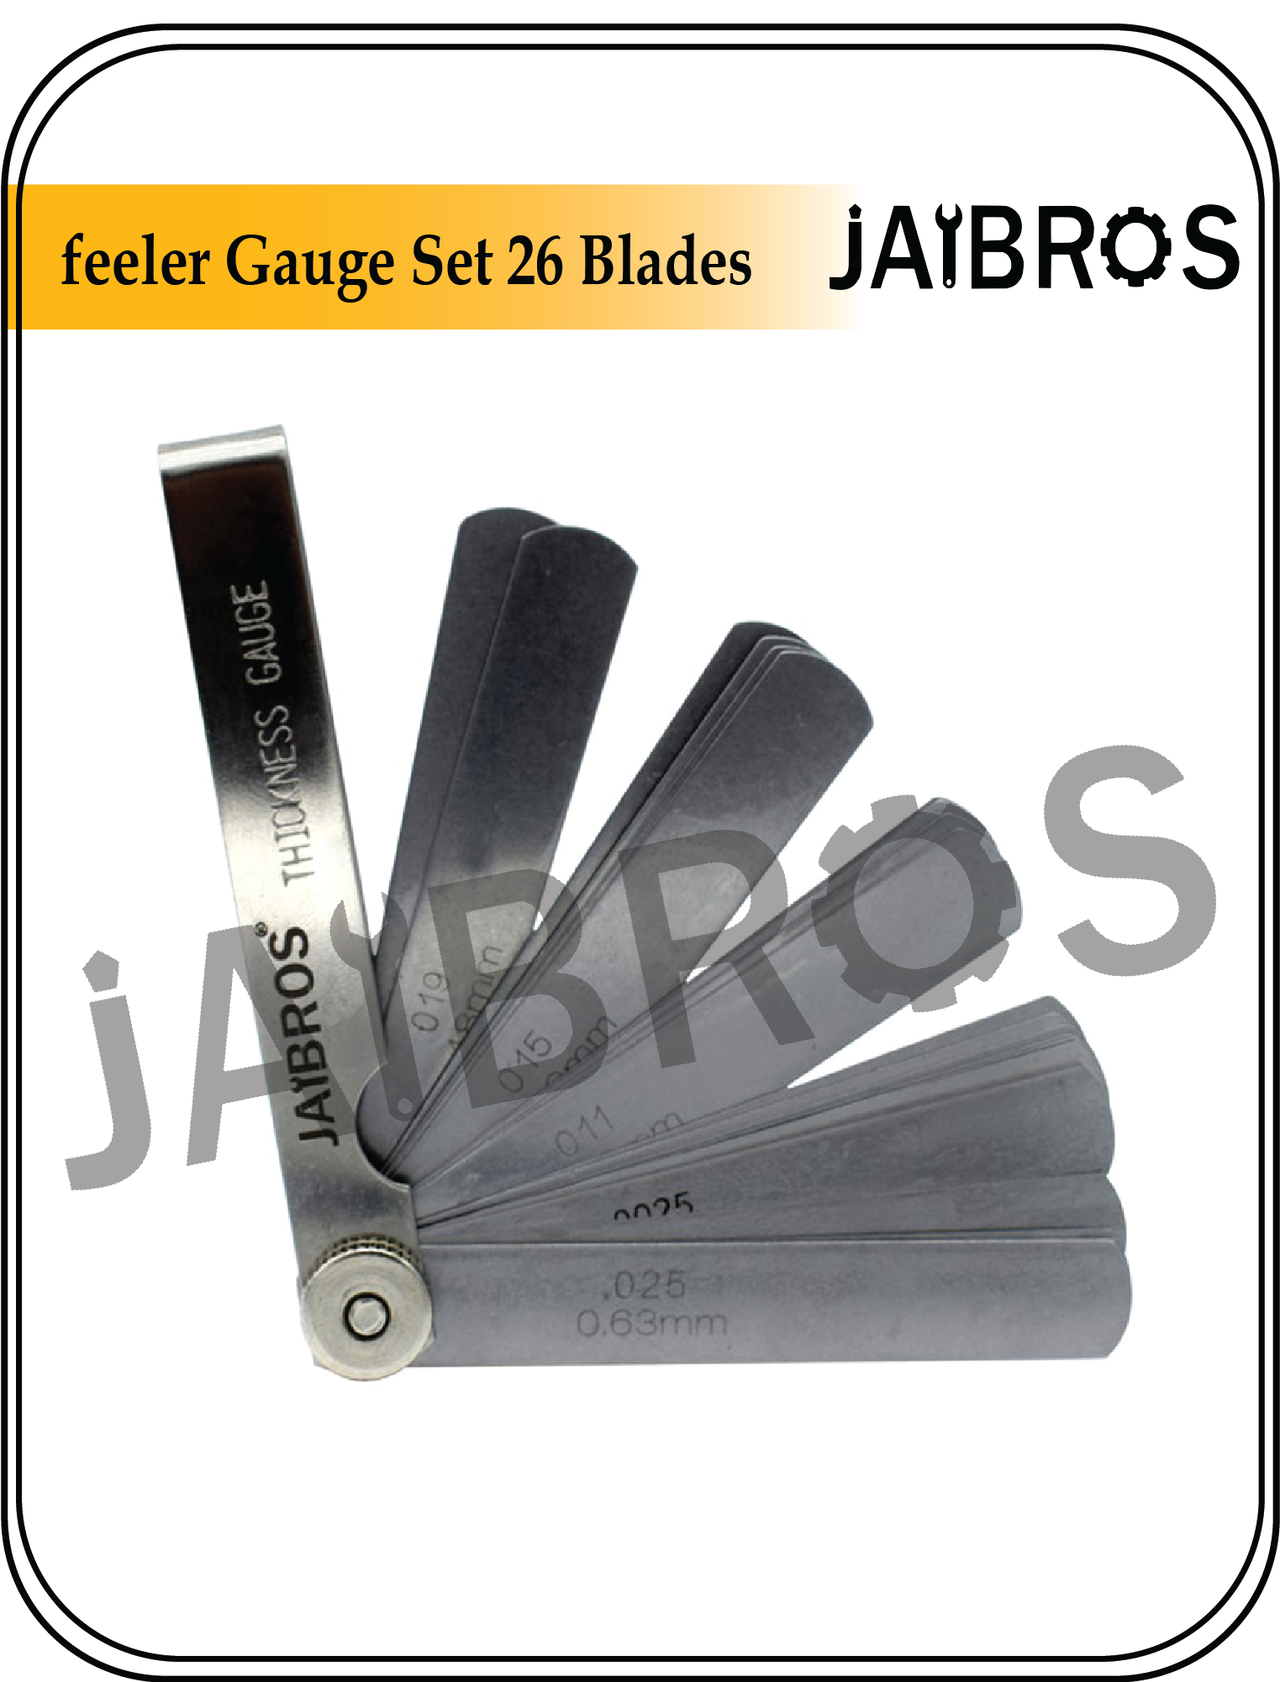 feeler gauge set 26 blades